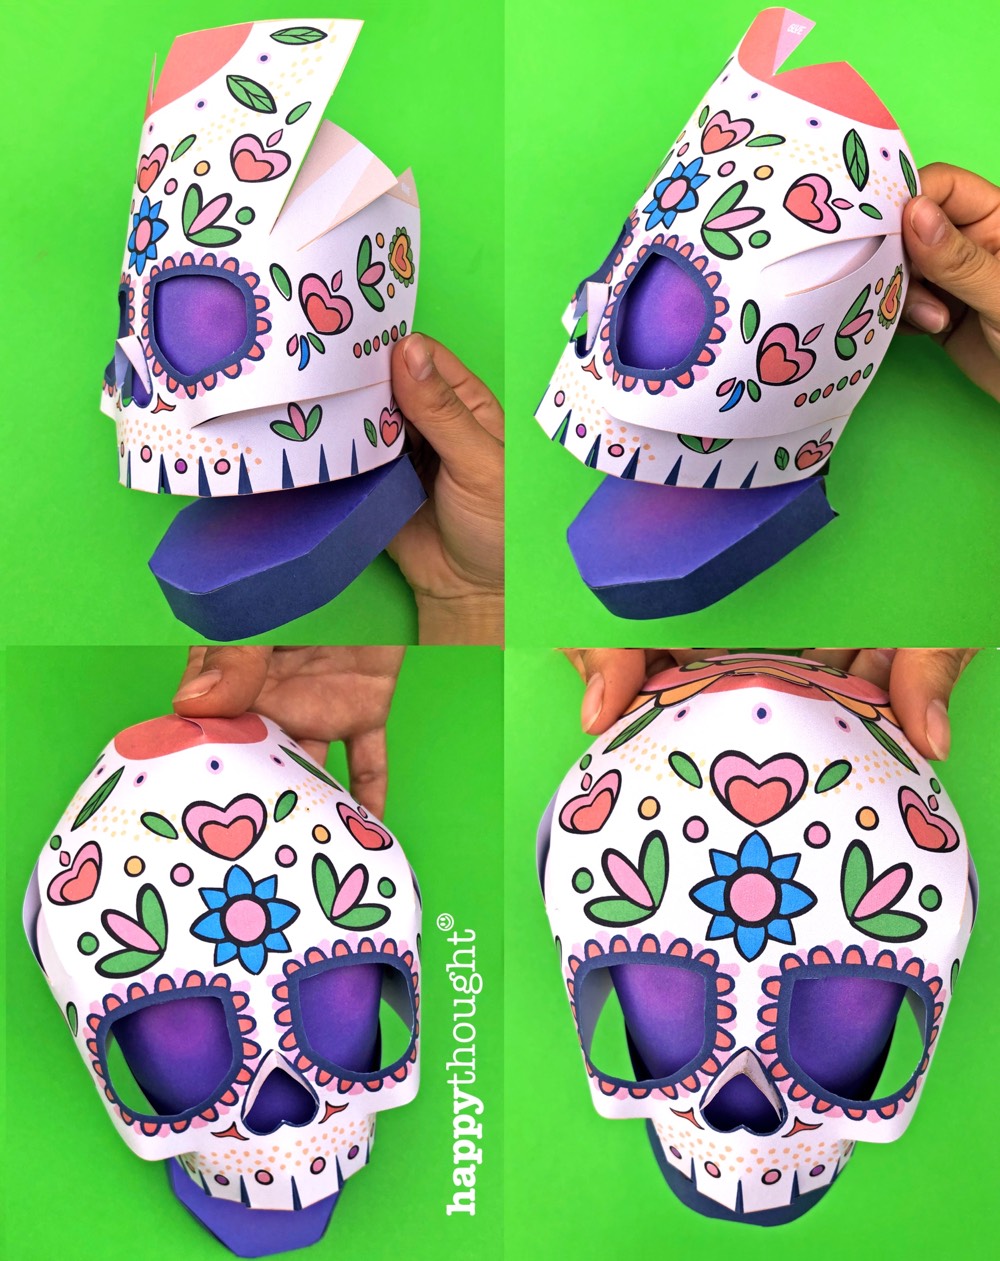 Calavera Skull puppet photo tutorial